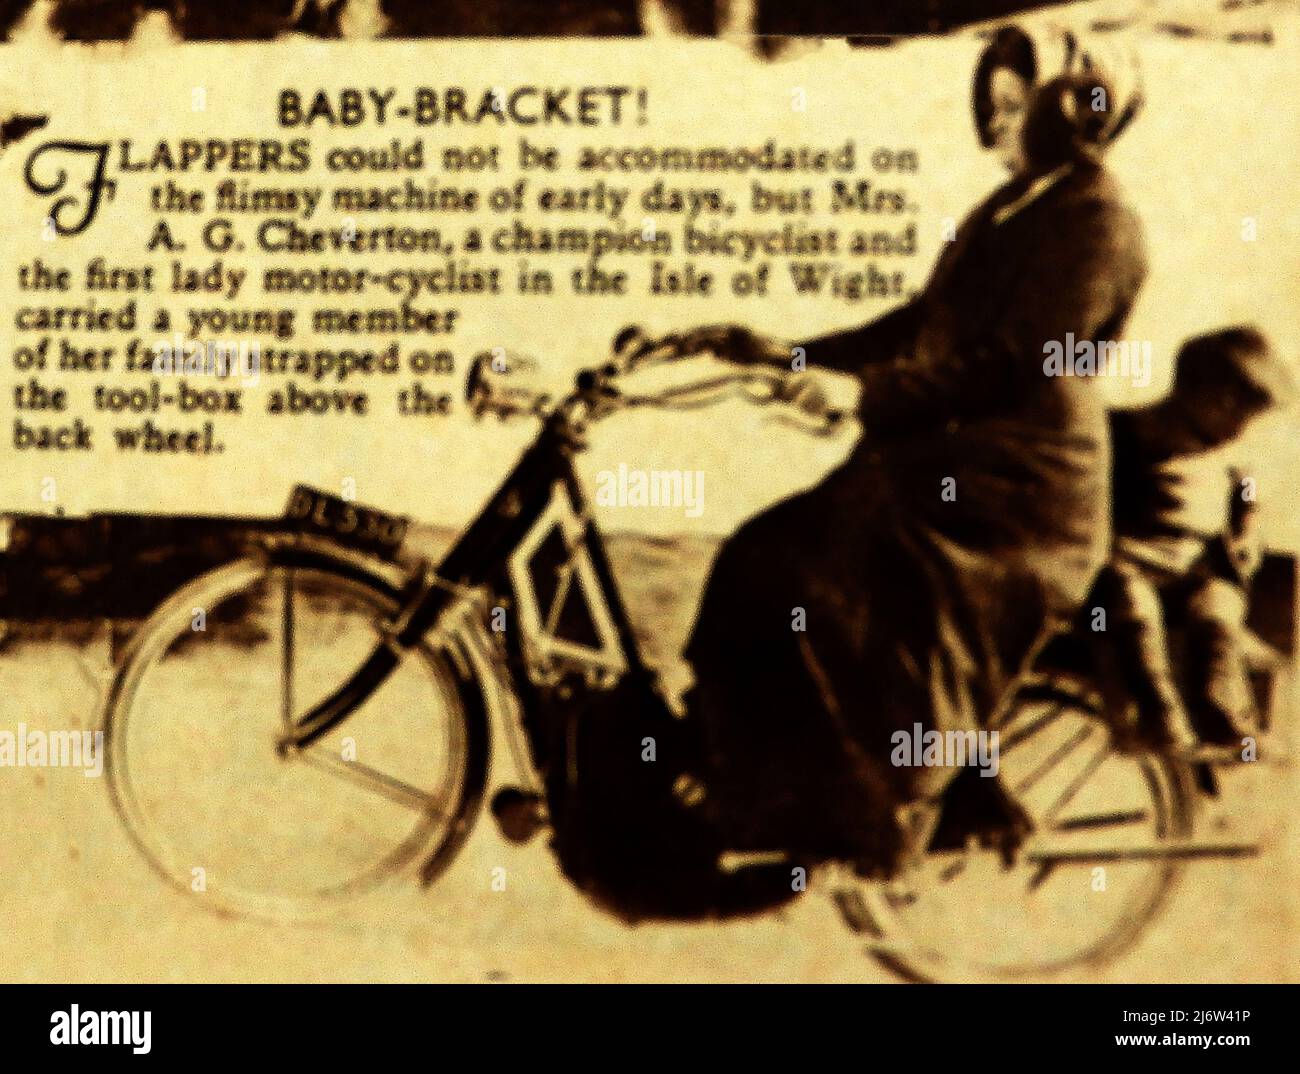 Ein Pressebild von 1911 von Frau Cheverton , Motorradfahrerin mit einem Kind, das auf einem provisorischen Sitz an ihren Werkzeugkasten geschnallt ist. Sie war eine meisterliche Pedalfahrerin und die erste Motorradfahrerin auf der Isle of Wight und möglicherweise auch in Großbritannien. Stockfoto